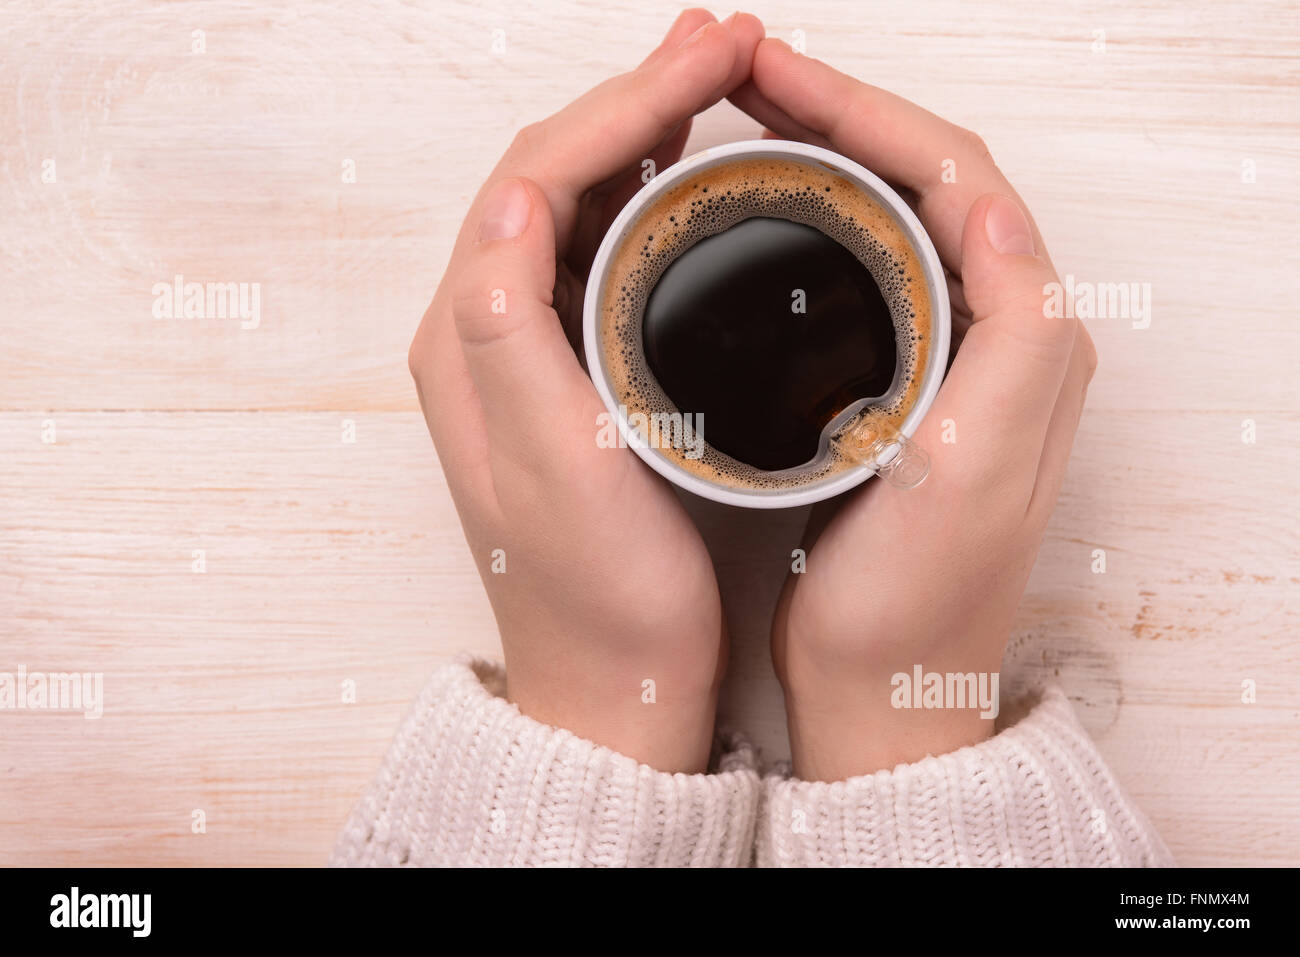 Vista superior de manos sosteniendo la taza de café de plástico Foto de stock